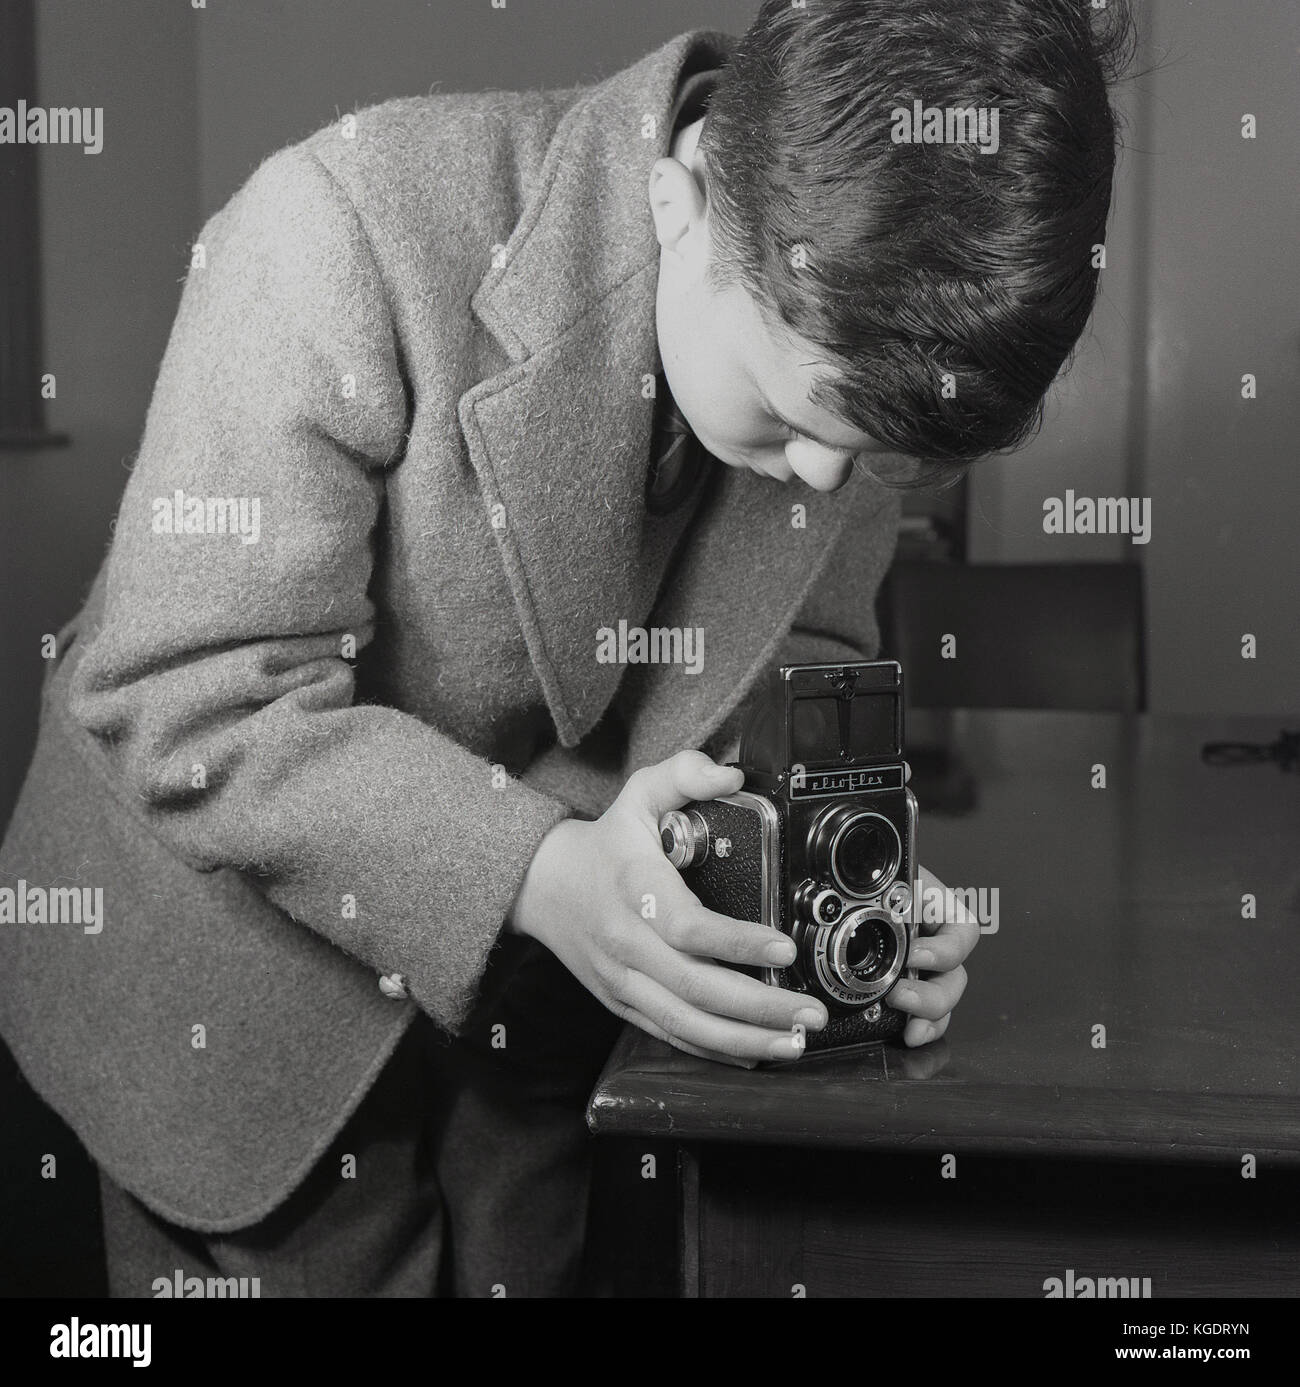 Années 1950, historique, Angleterre, Royaume-Uni, habillés d'un adolescent  portant une veste et cravate utilise un coin de table pour la stabilité  qu'il prend une photo à l'aide d'un Elioflex Ferrania appareil photo.